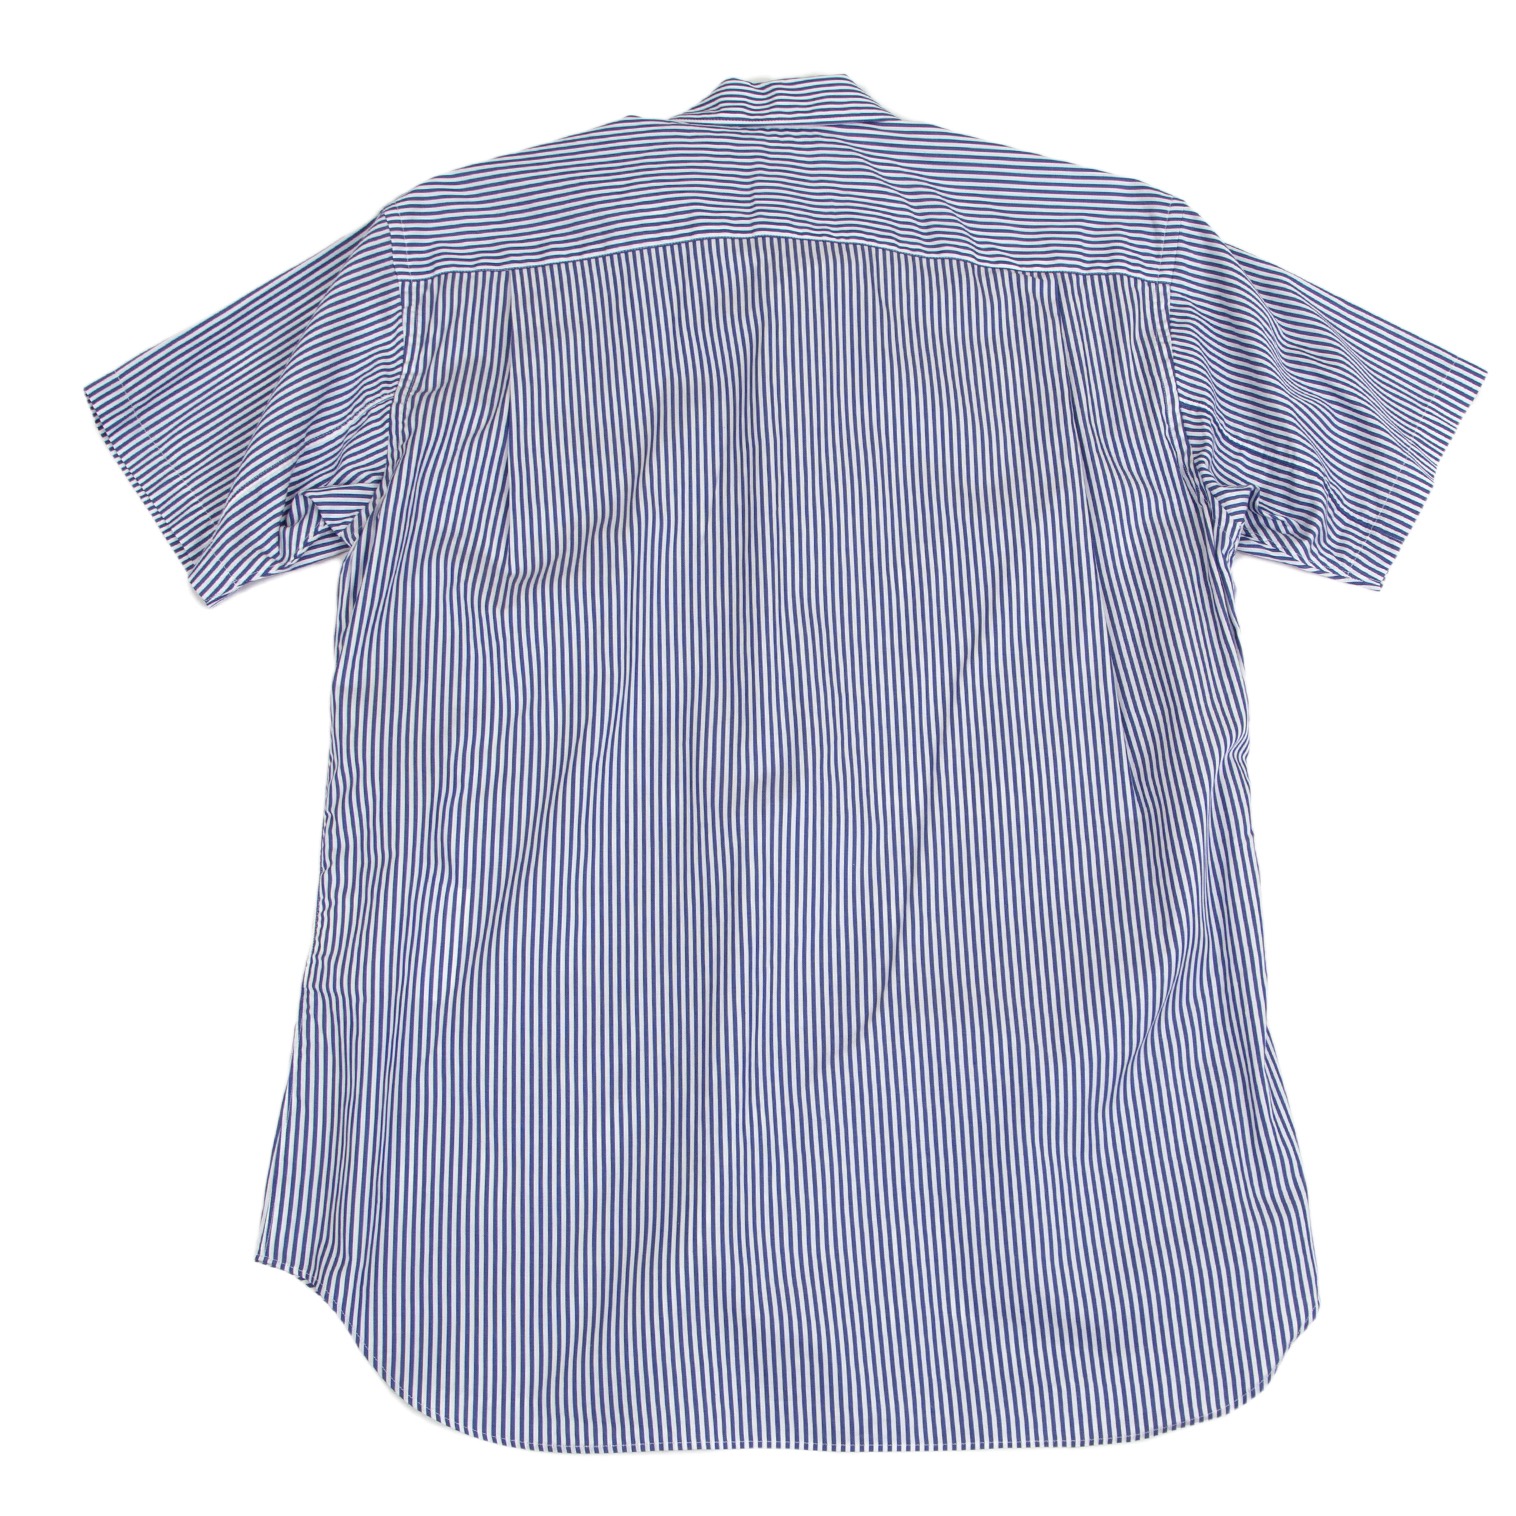 コムデギャルソンシャツ 美品 ギンガムチェック柄 半袖 シャツ M ブルー